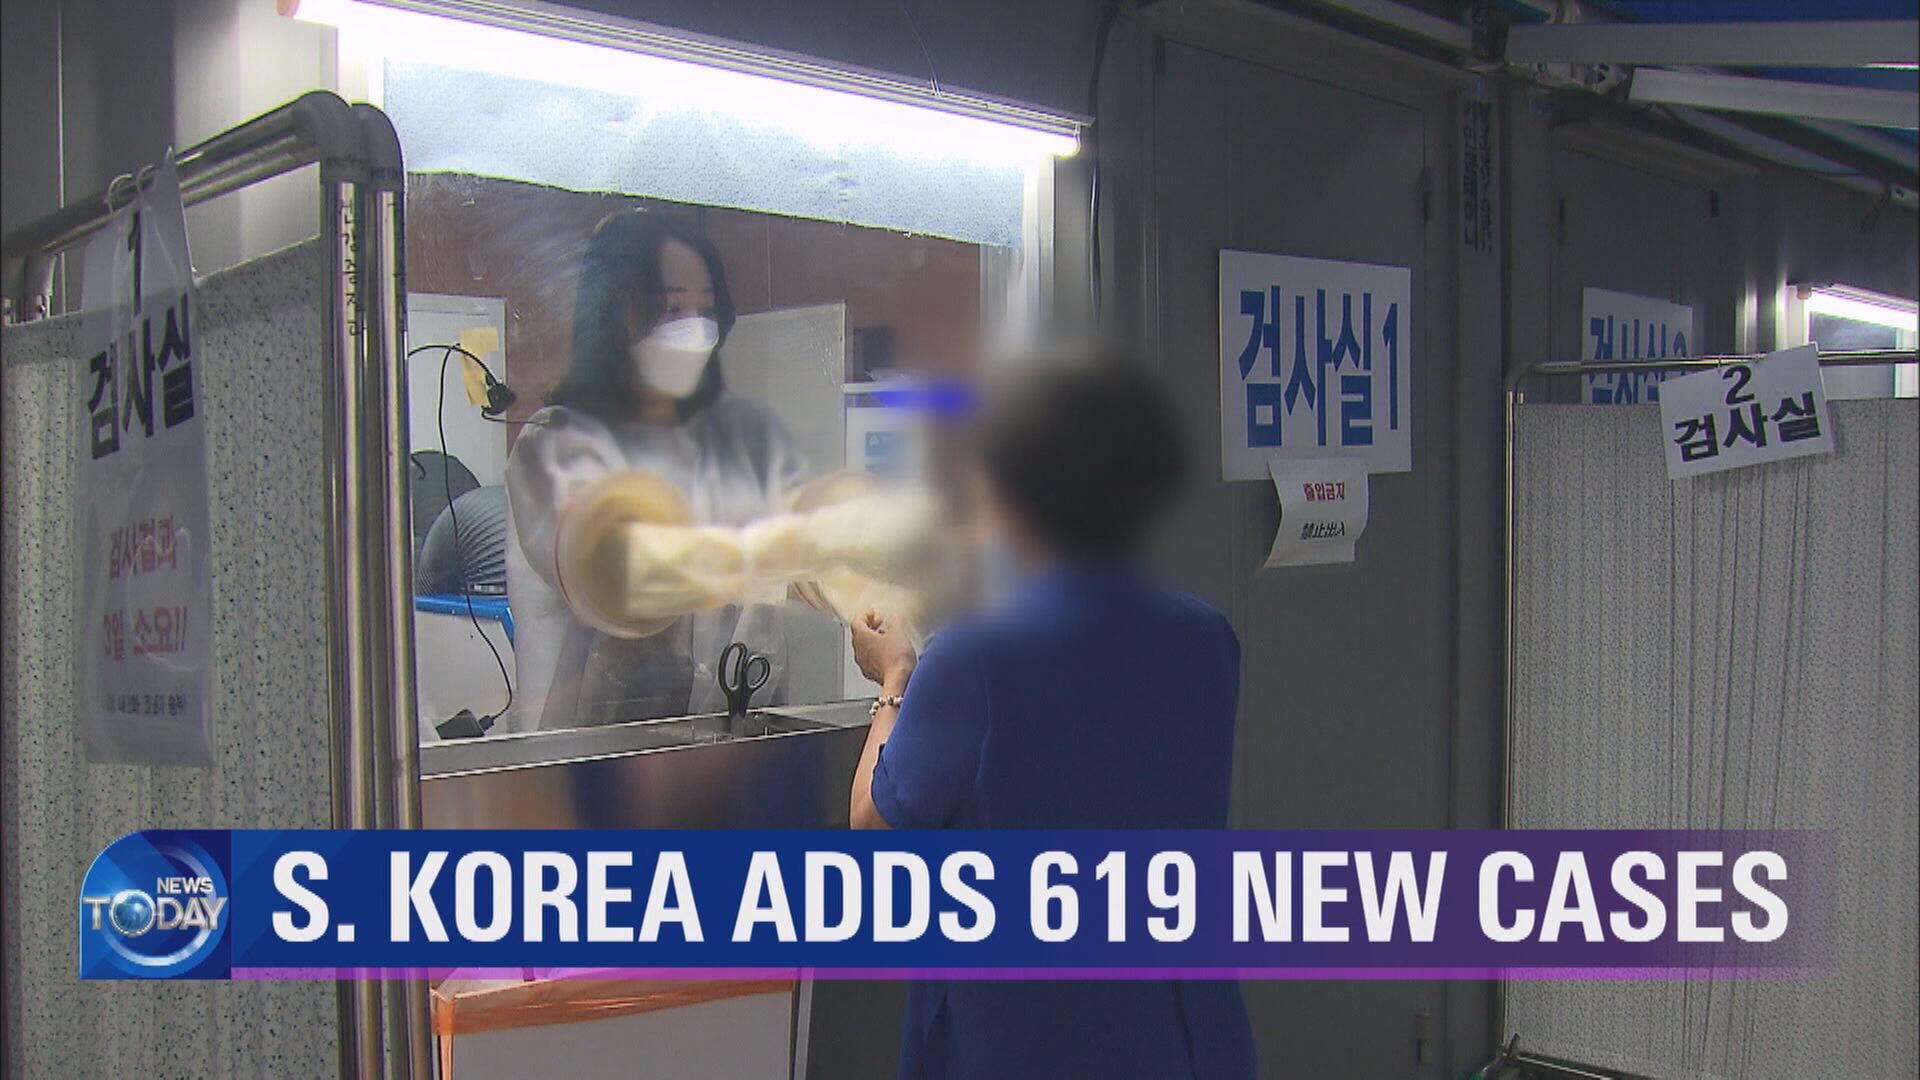 S. KOREA ADDS 619 NEW CASES